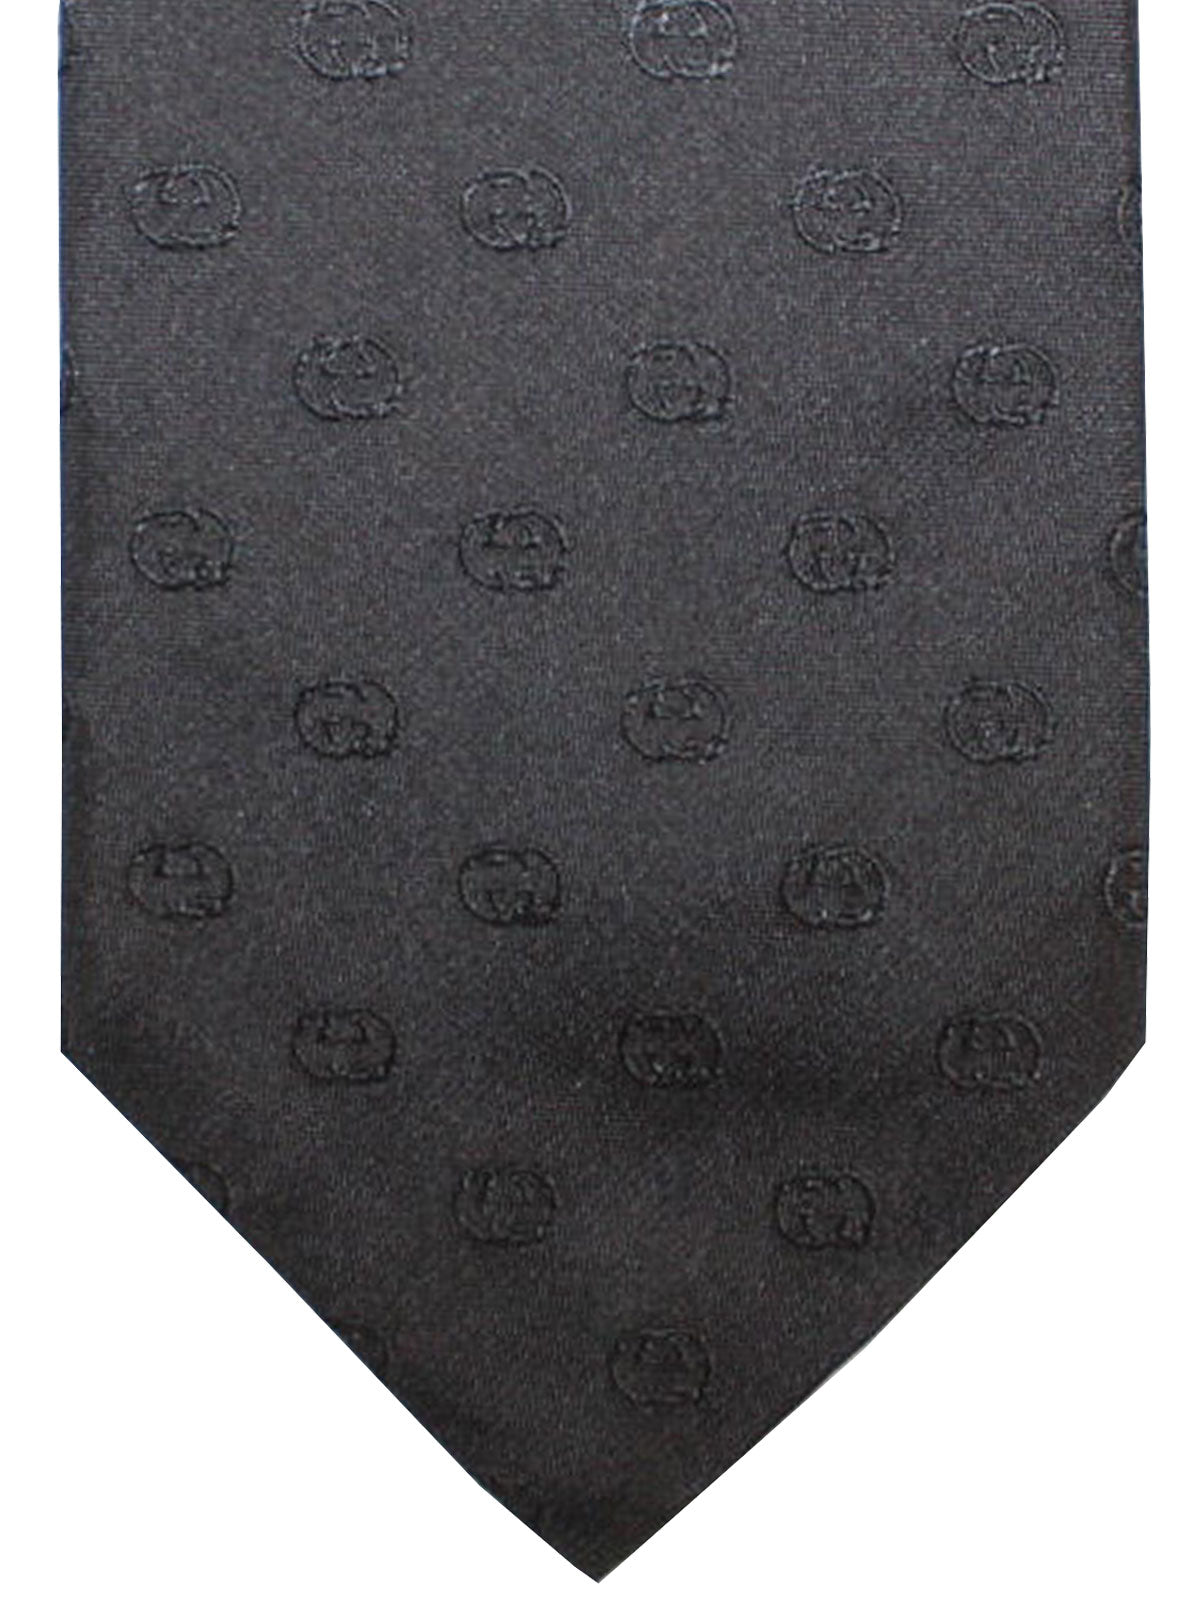 black gucci tie